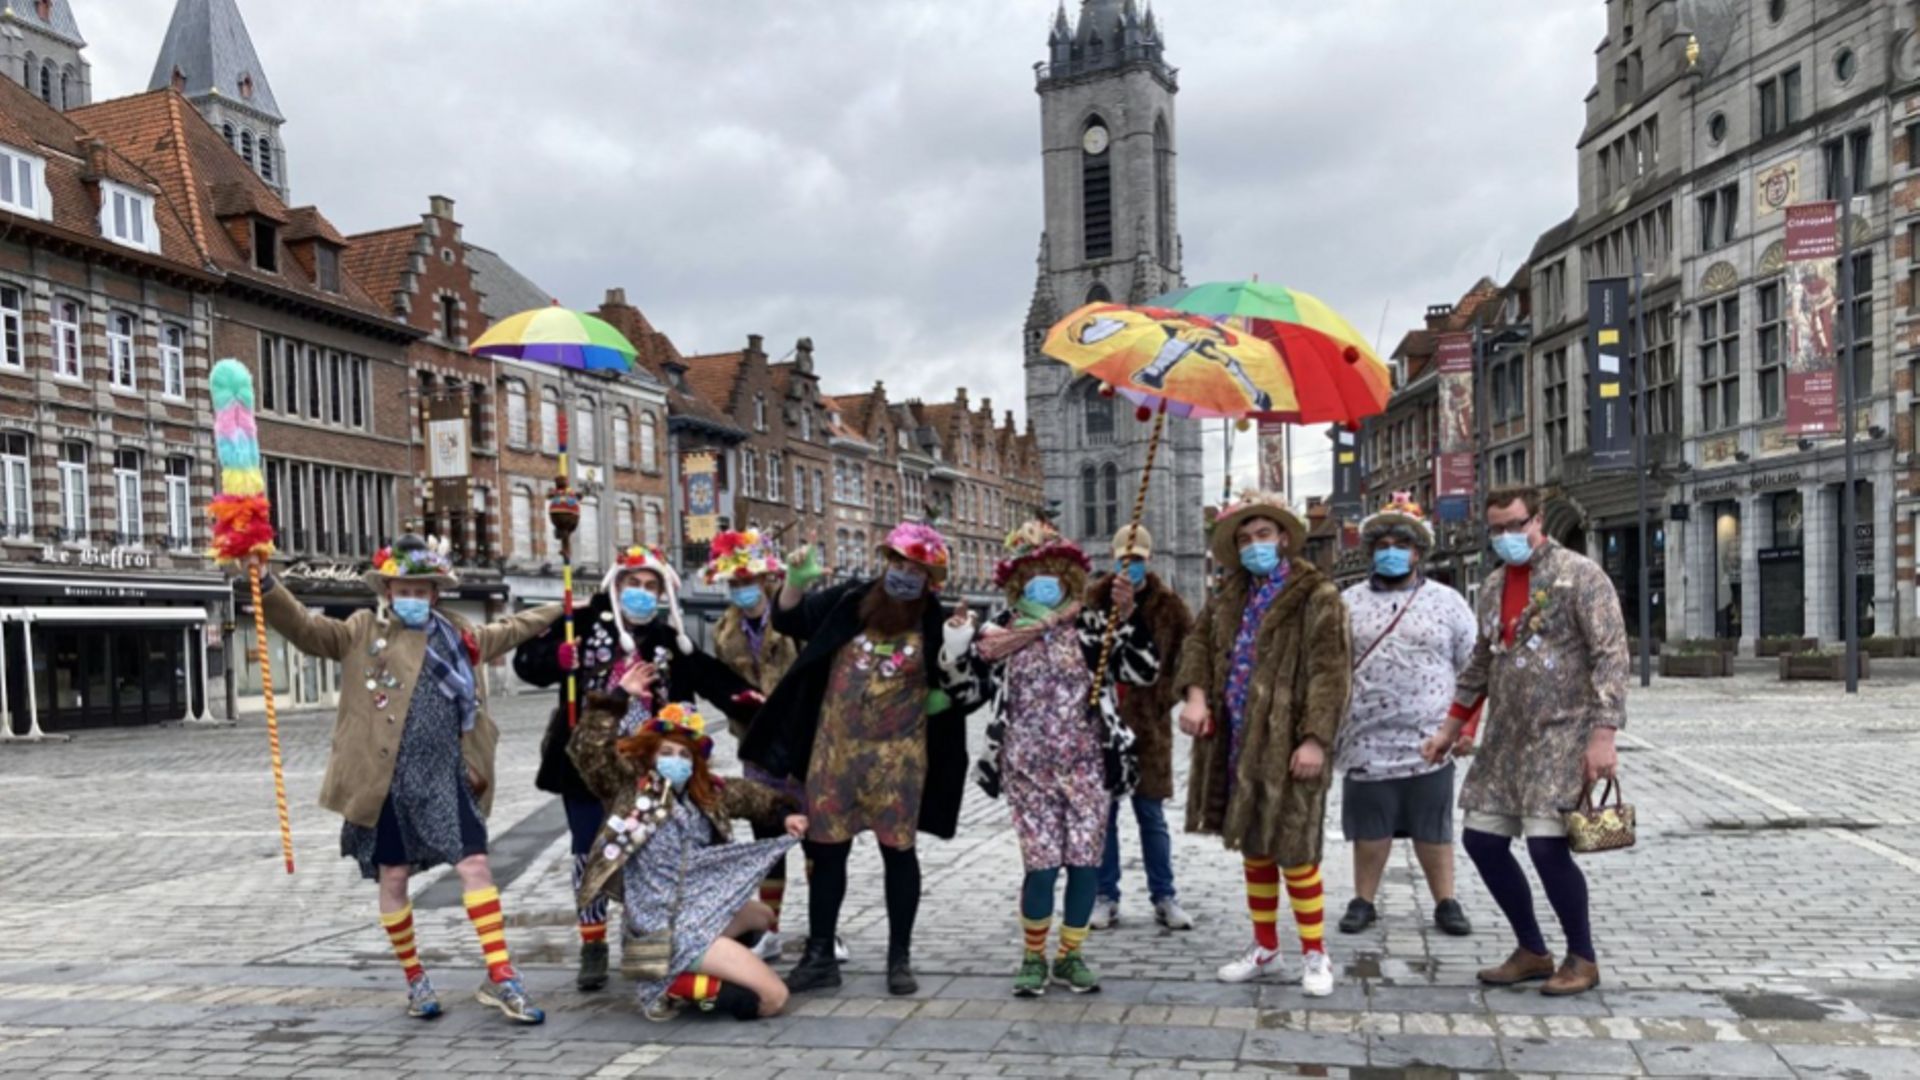 L’an dernier déjà, le carnaval de Tournai avait été annulé. Ce qui n’avait pas empêché la confrérie des "Ma tante" de se réunir en bulle de 10.